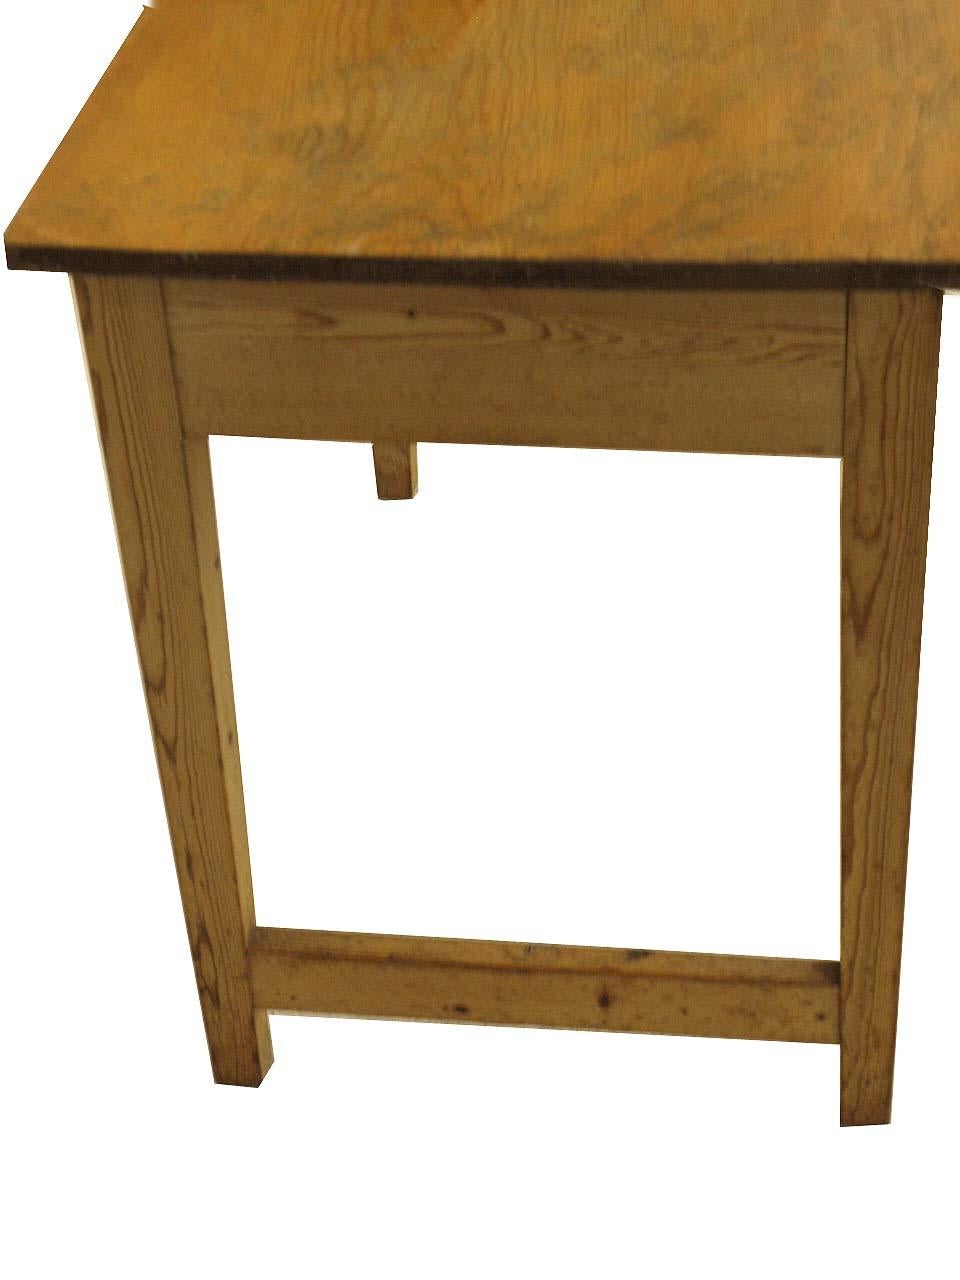 Table d'écriture à un tiroir en pin anglais, probablement peinte à l'origine, puis décapée et cirée au cours des 30 dernières années. Il a une patine agréable, a 24'' d'espace pour s'asseoir et un tiroir à l'extrémité pour le stockage. Les pieds